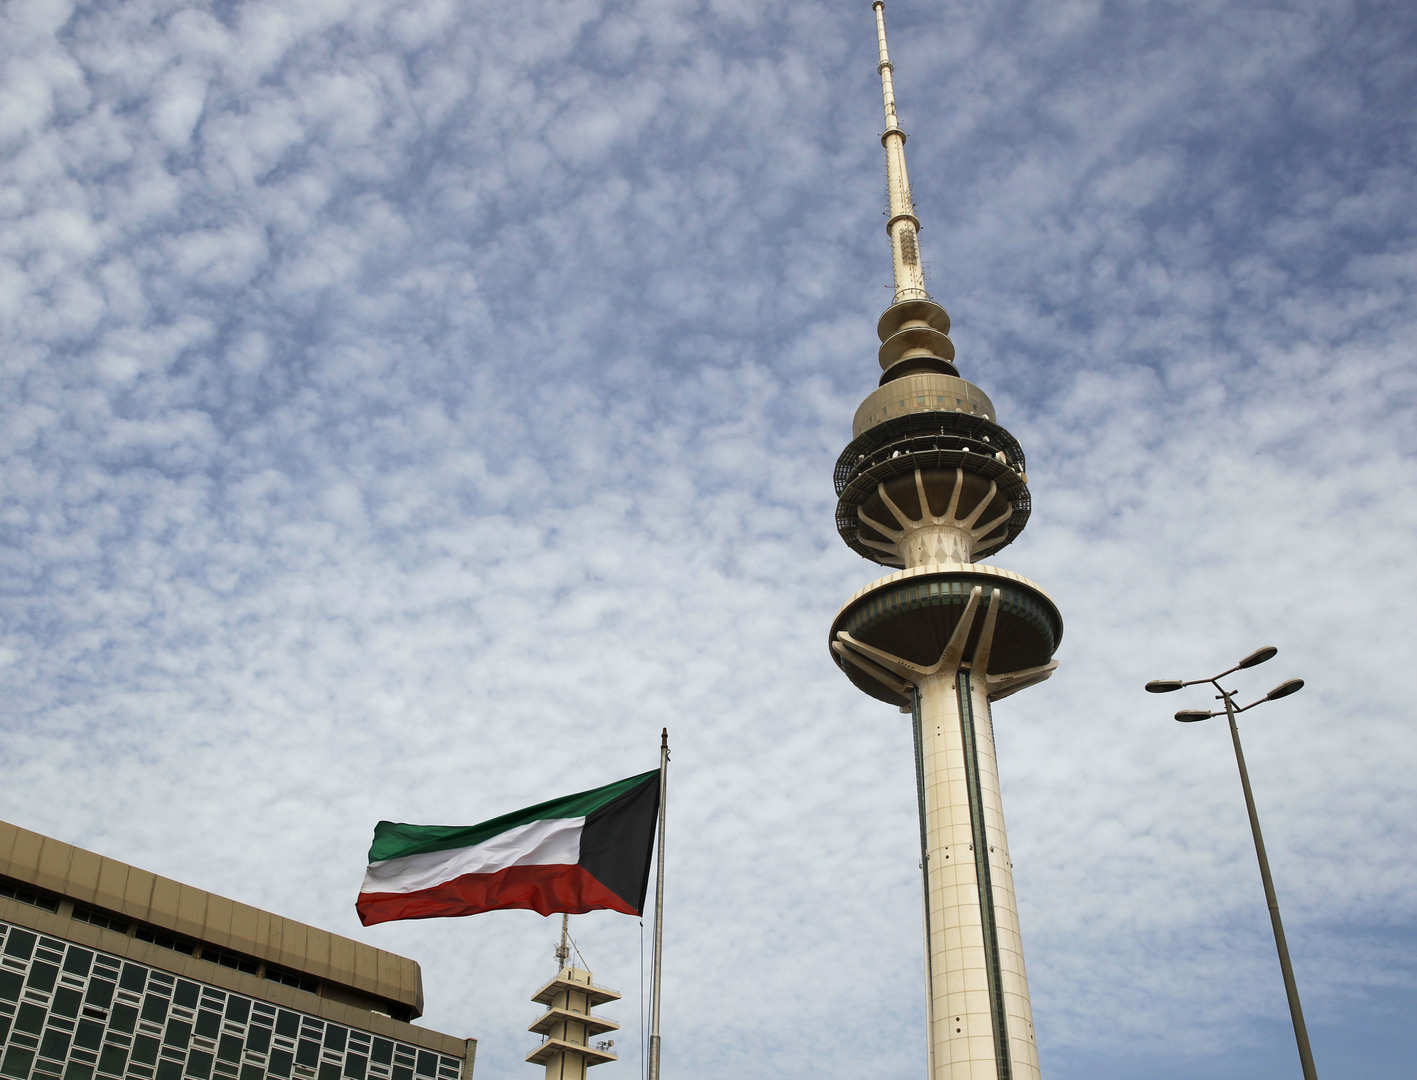 توجيهات عاجلة من وزير الصحة الكويتي بعد واقعة أثارت ضجة كبيرة في البلاد